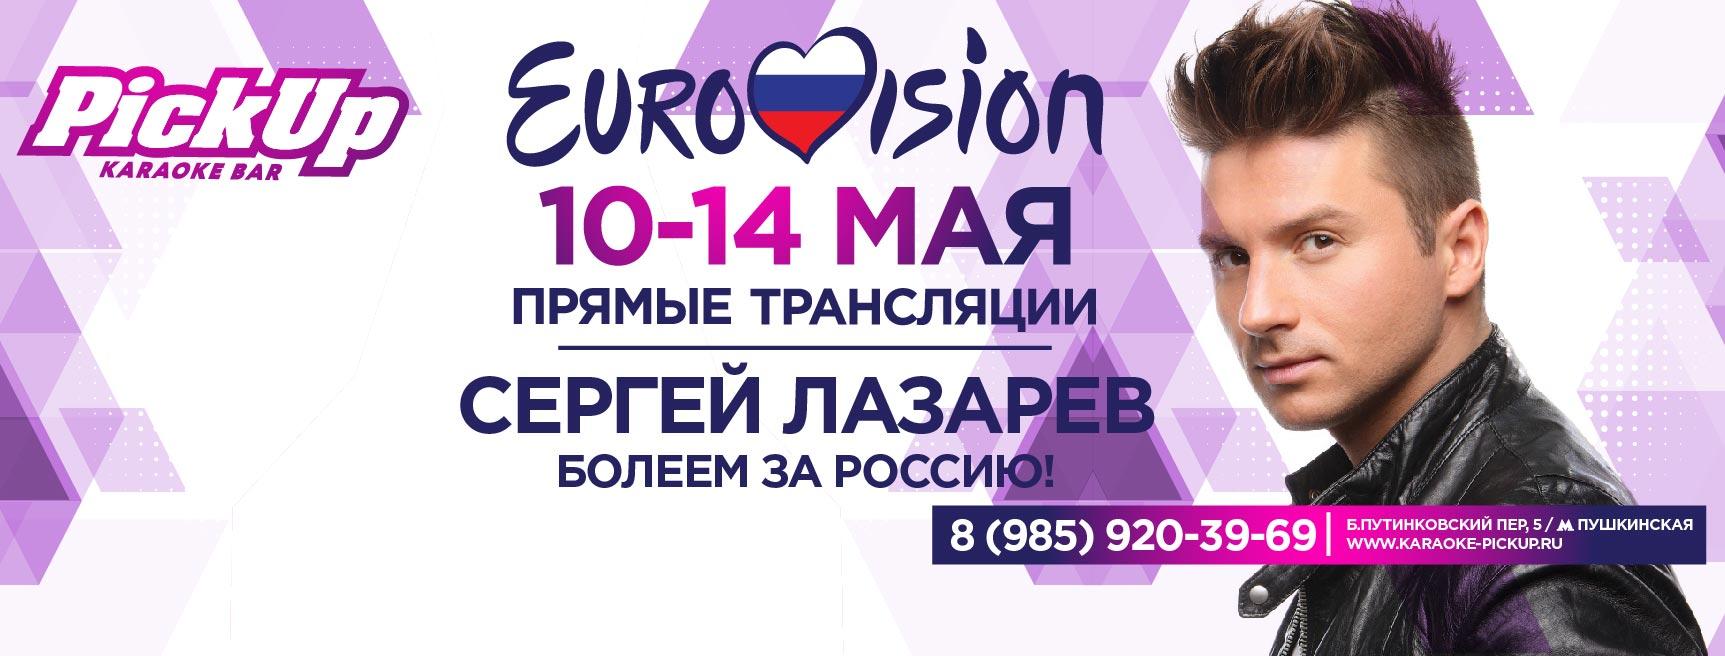 10-14 мая Pick Up прямые трансляции Евровидения 2016